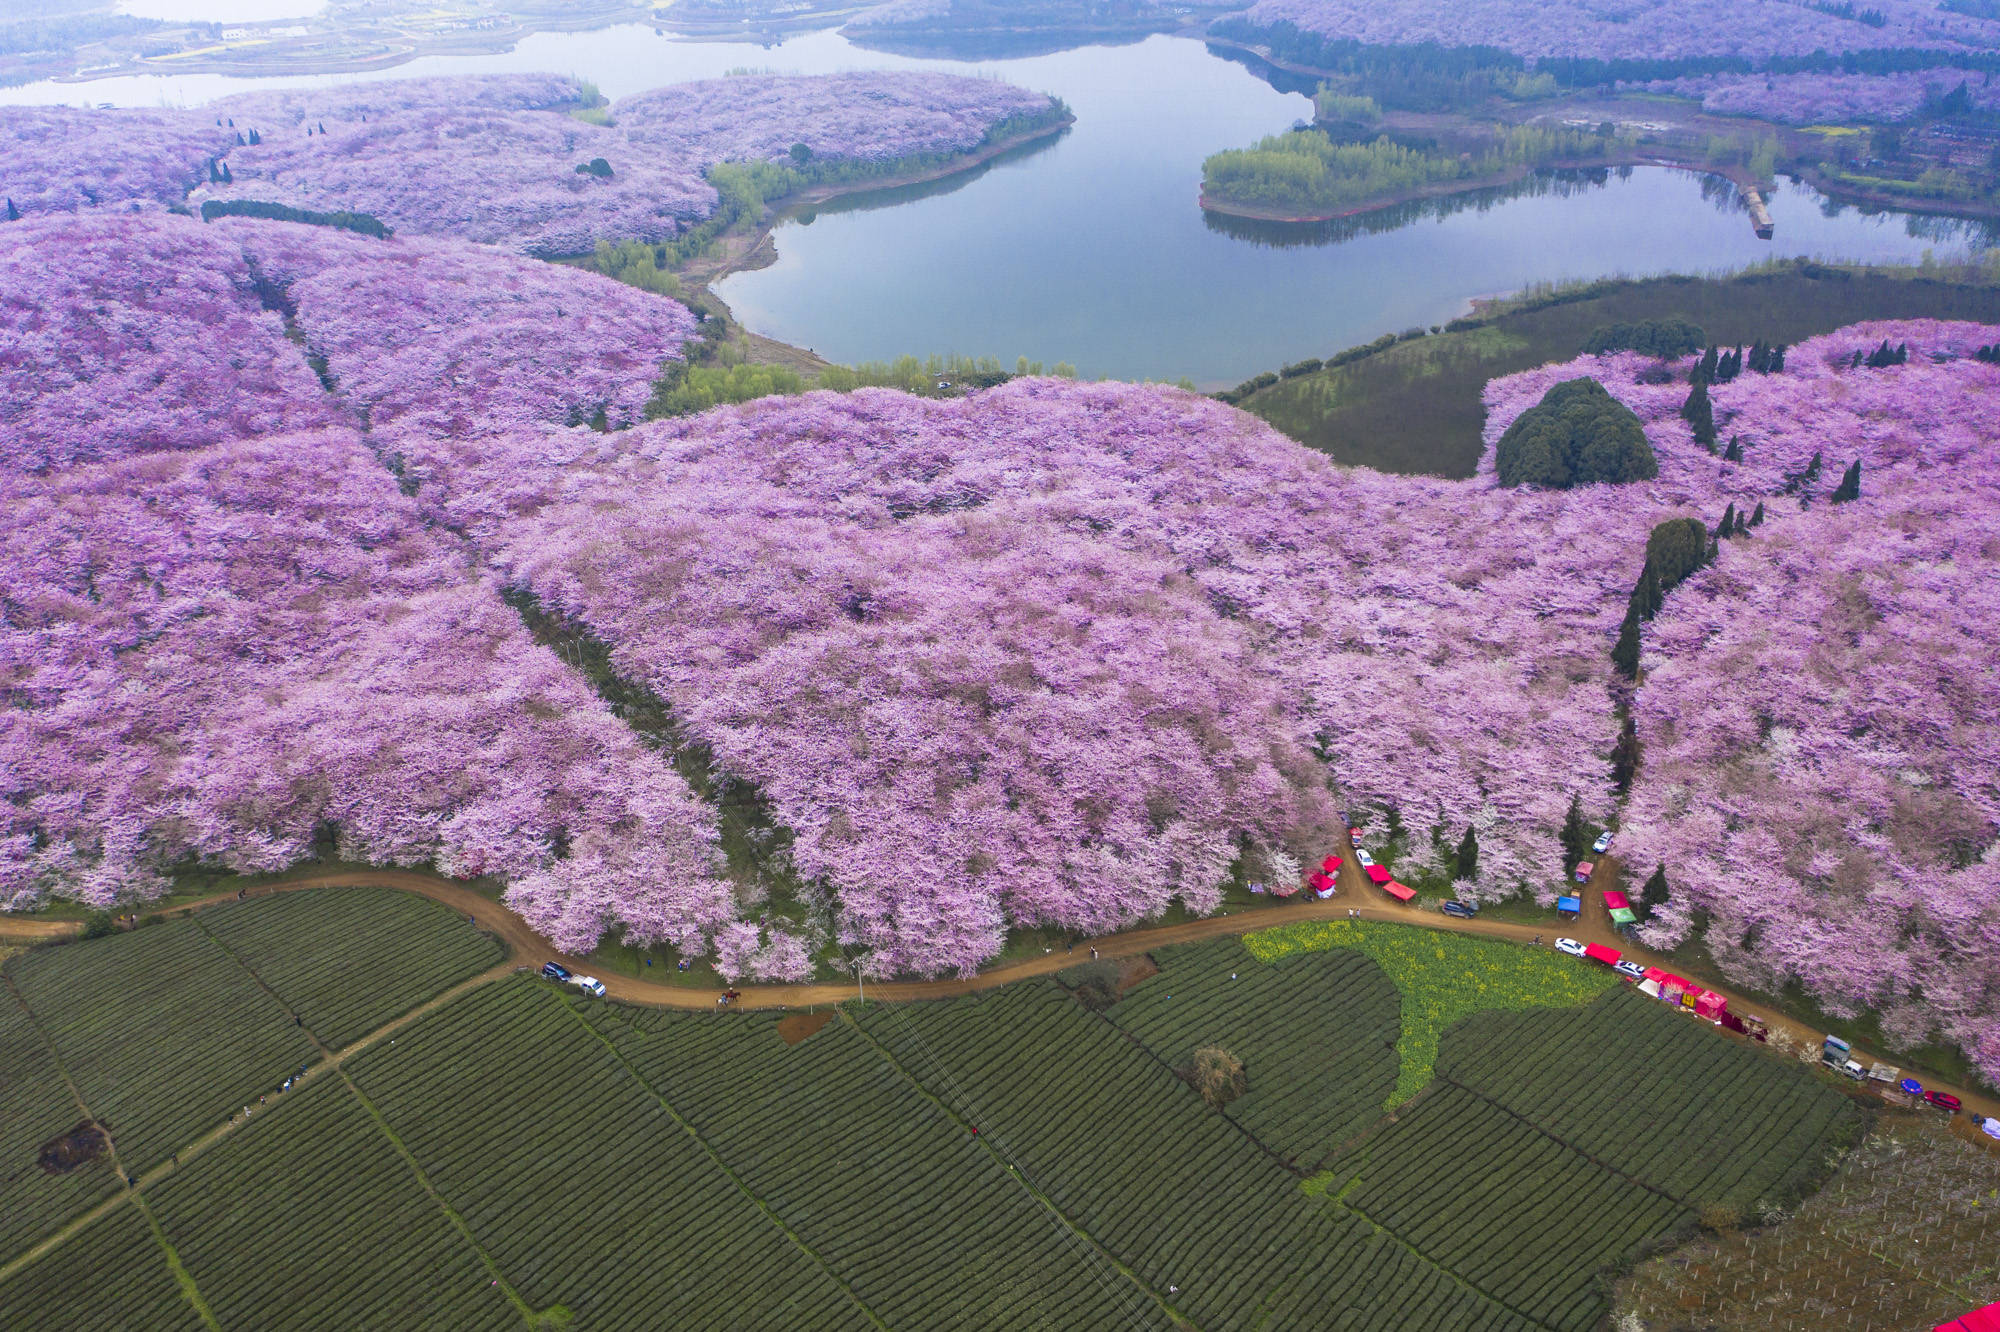 中国红樱花产地图片